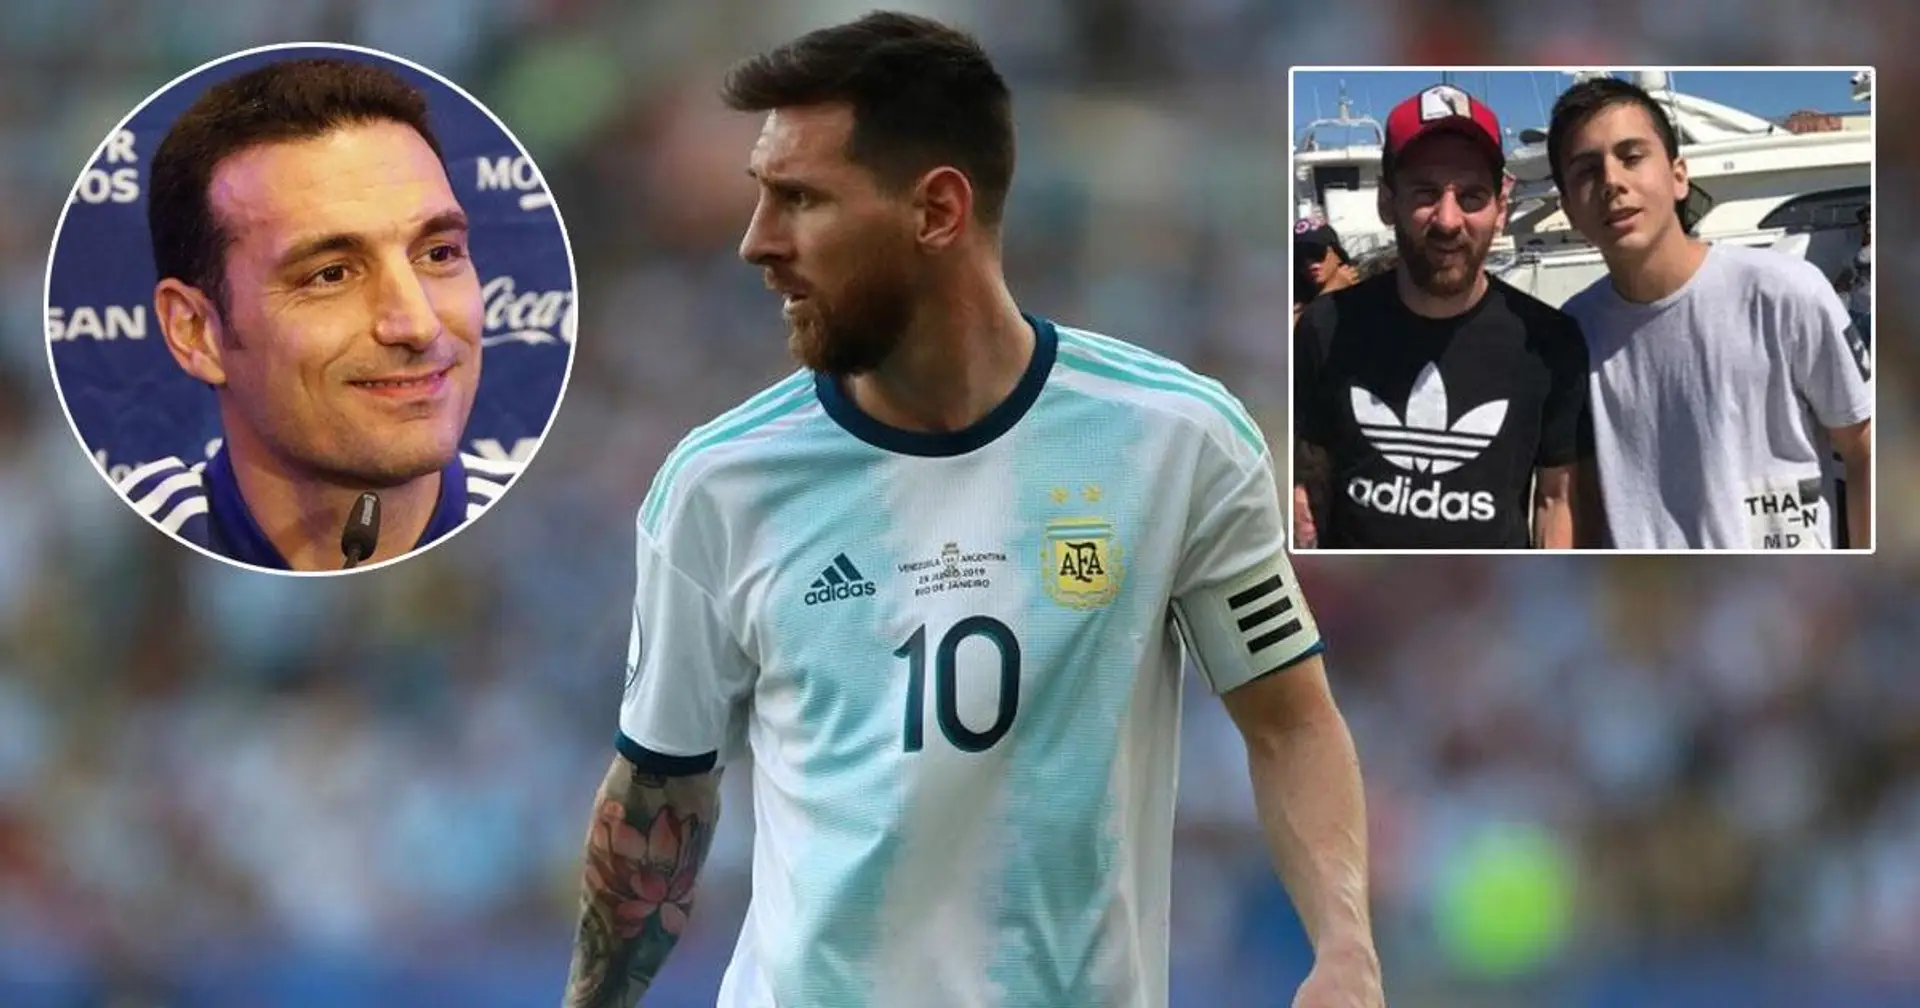 Le sélectionneur de l'Argentine nomme ce qu'il admire le plus chez Messi - ce ne sont pas ses compétences de jeu